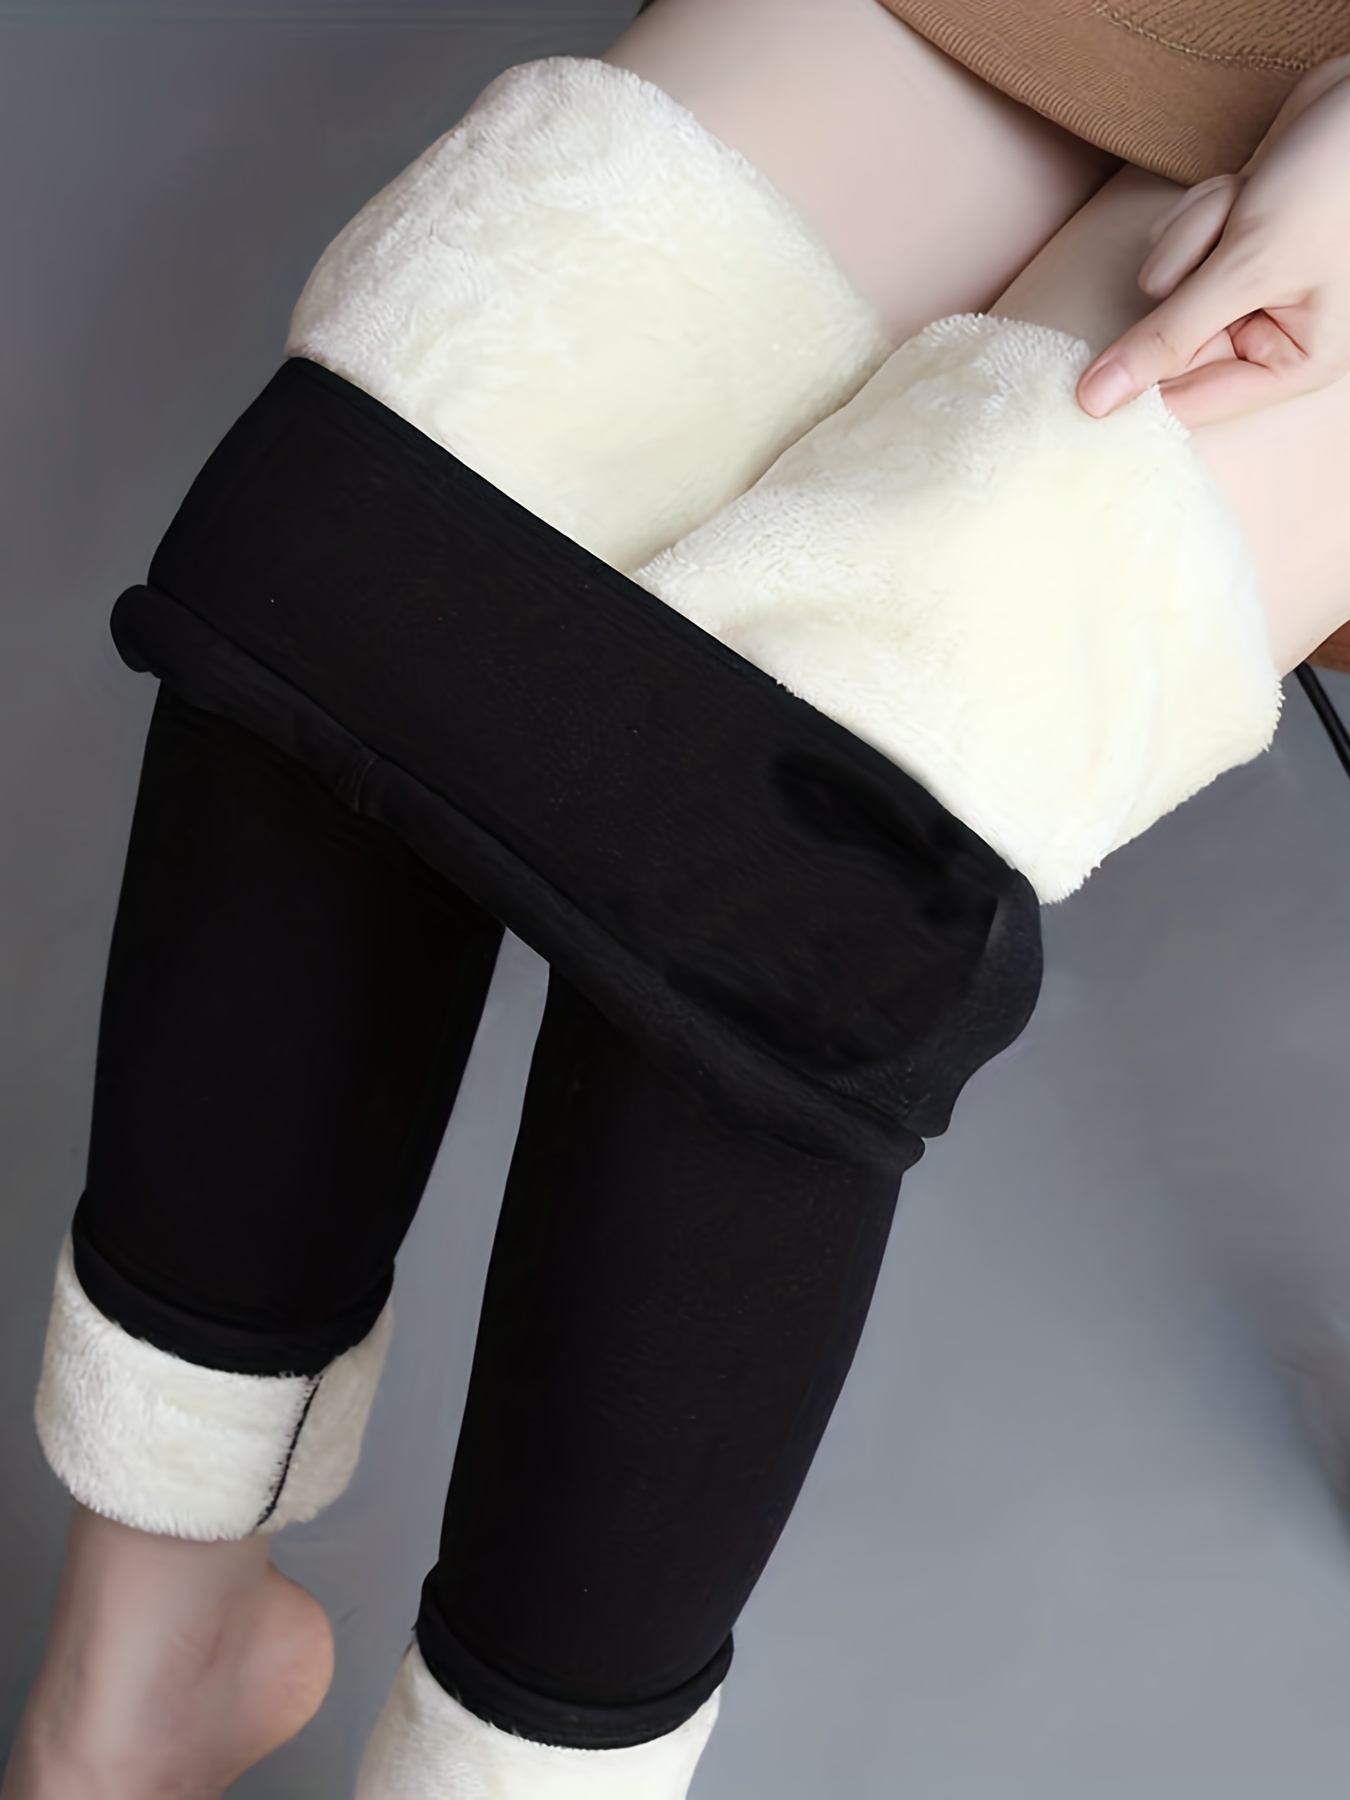 Buy Women's Leggings Fleece Lined Leggingsandjoggers Online